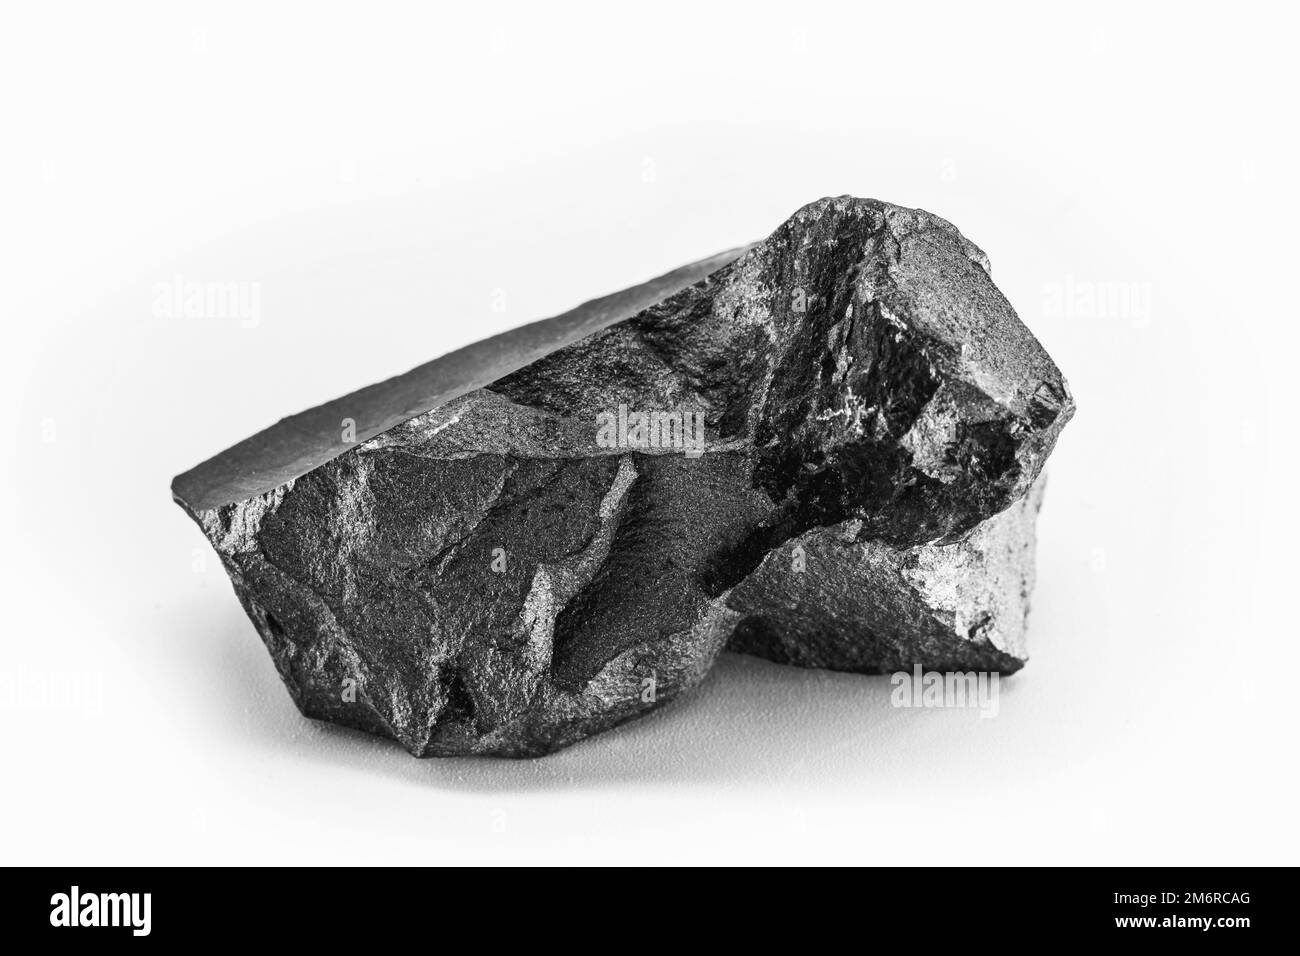 Stahlerz, hergestellt aus Eisenerz, Kohle und Kalk. Metalllegierung, industrielle Verwendung. Stockfoto